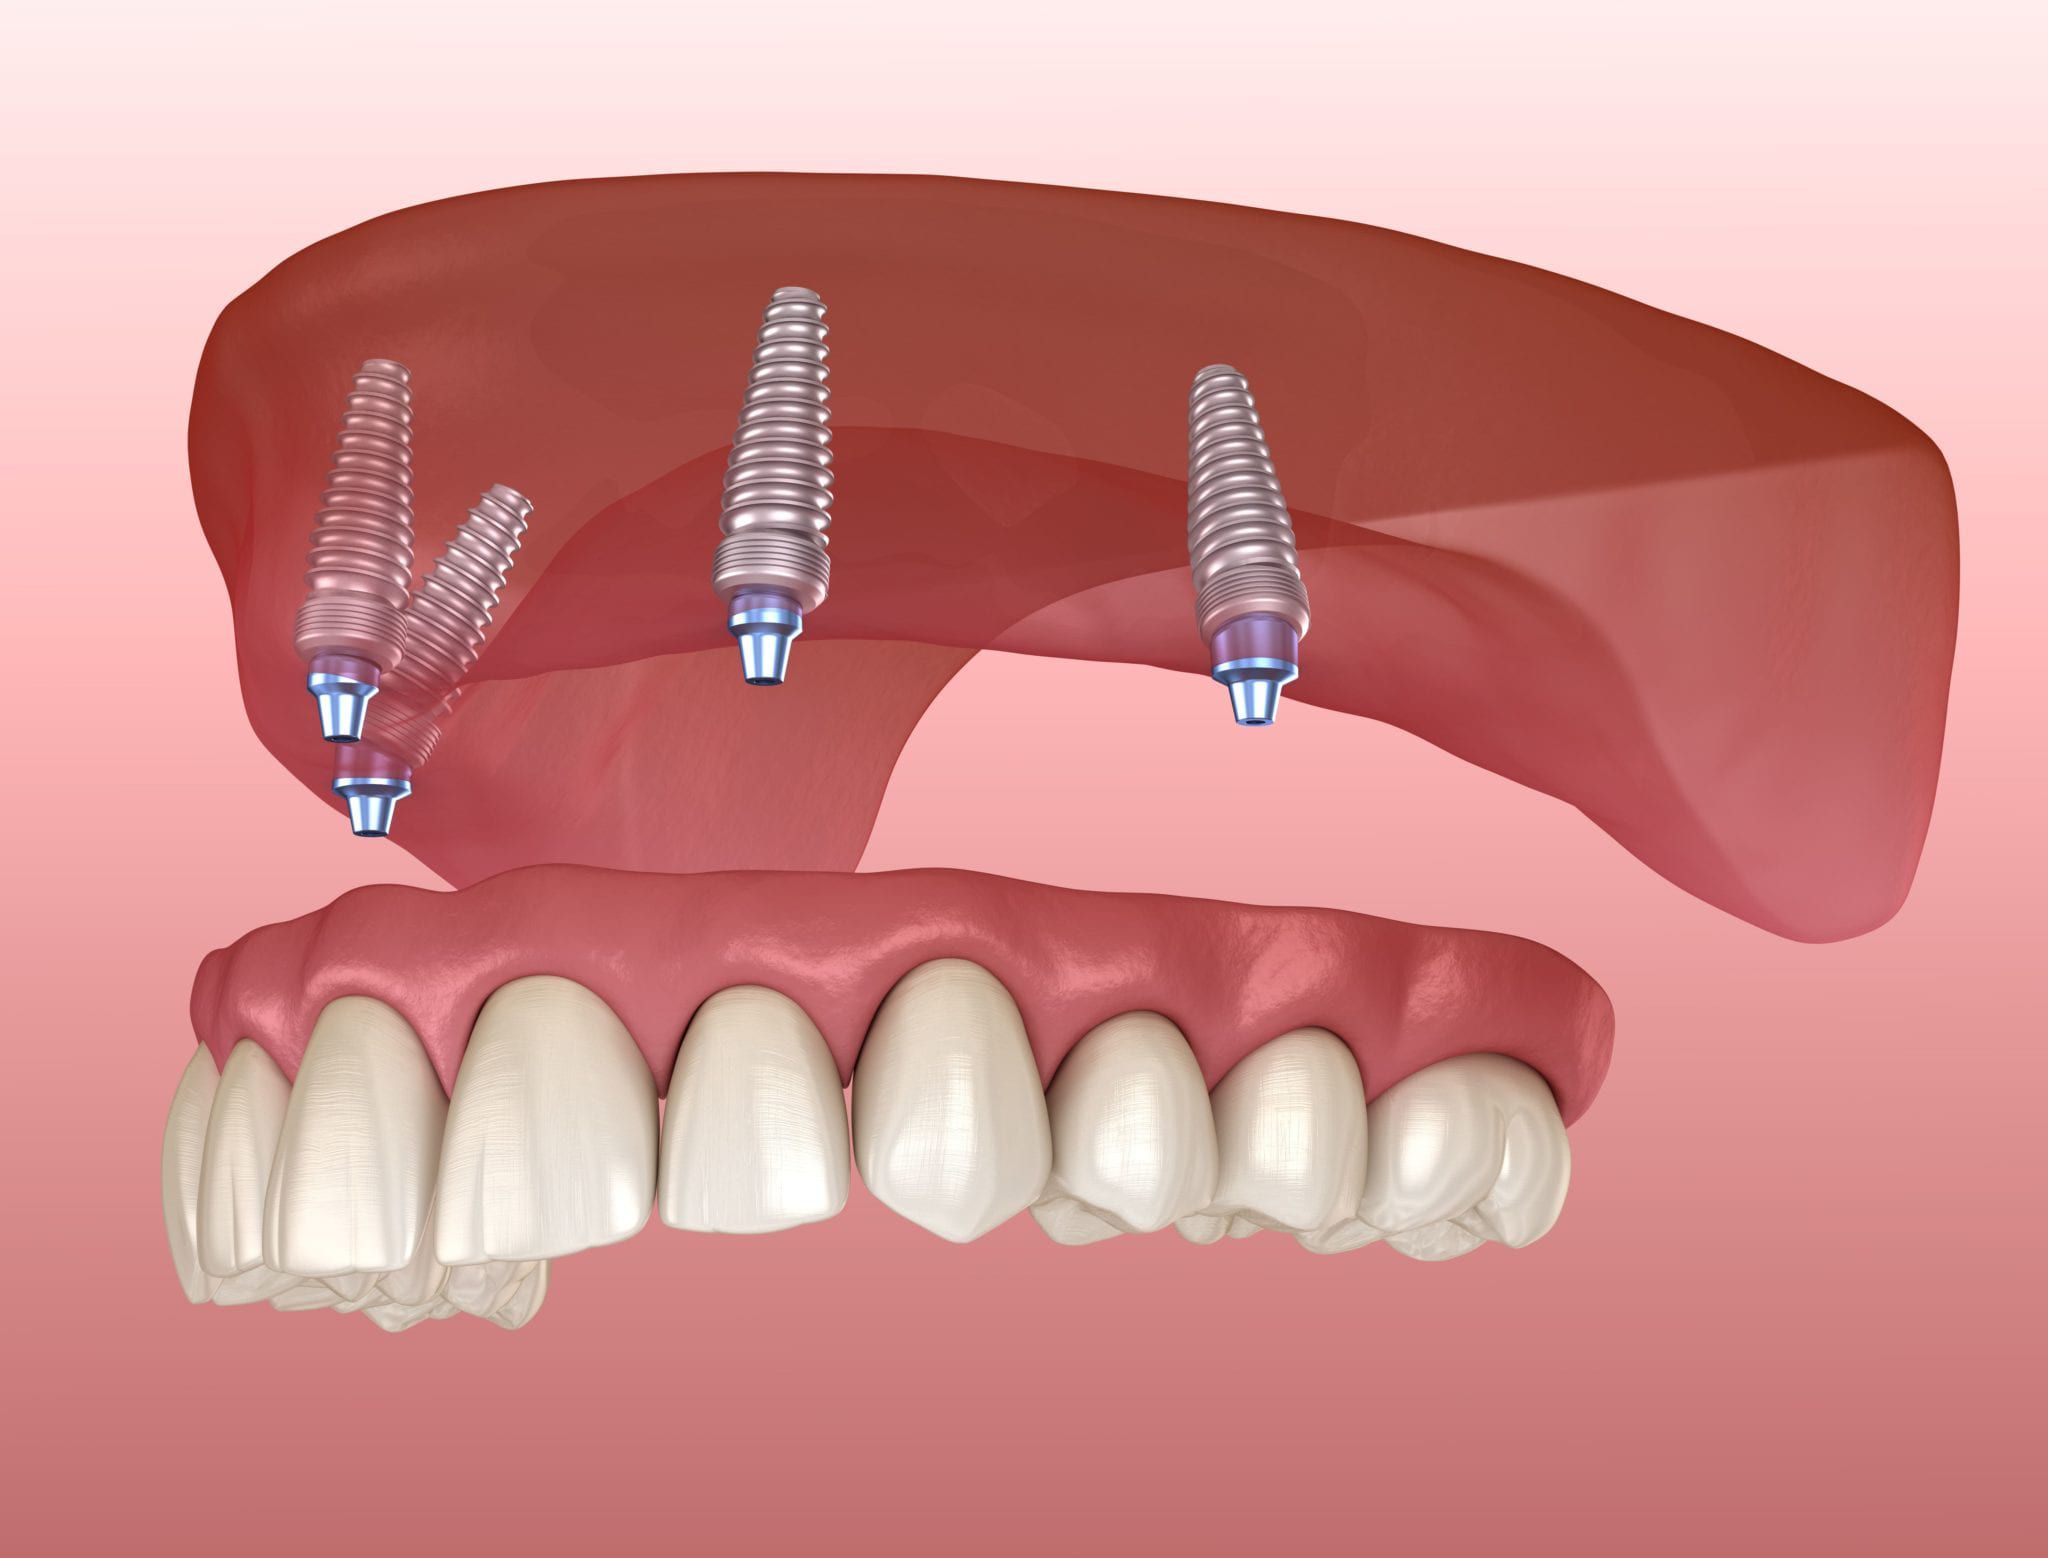 Răng giả và dental prosthesis nghĩa là gì trong tiếng Anh?
